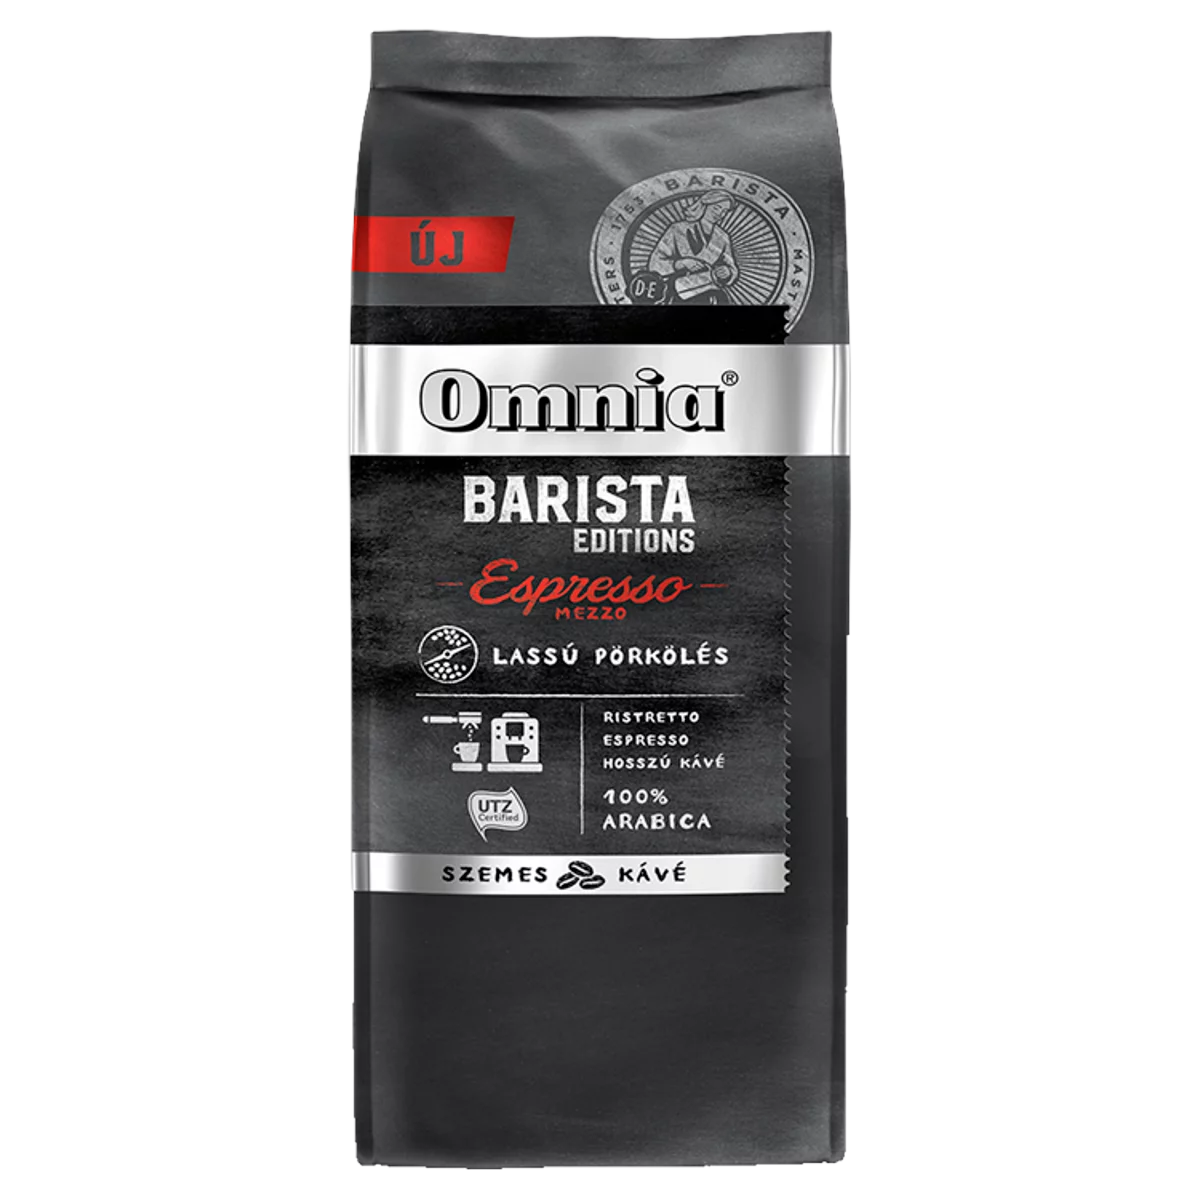 Omnia Barista Editions Espresso Mezzo szemes pörkölt kávé 900 g